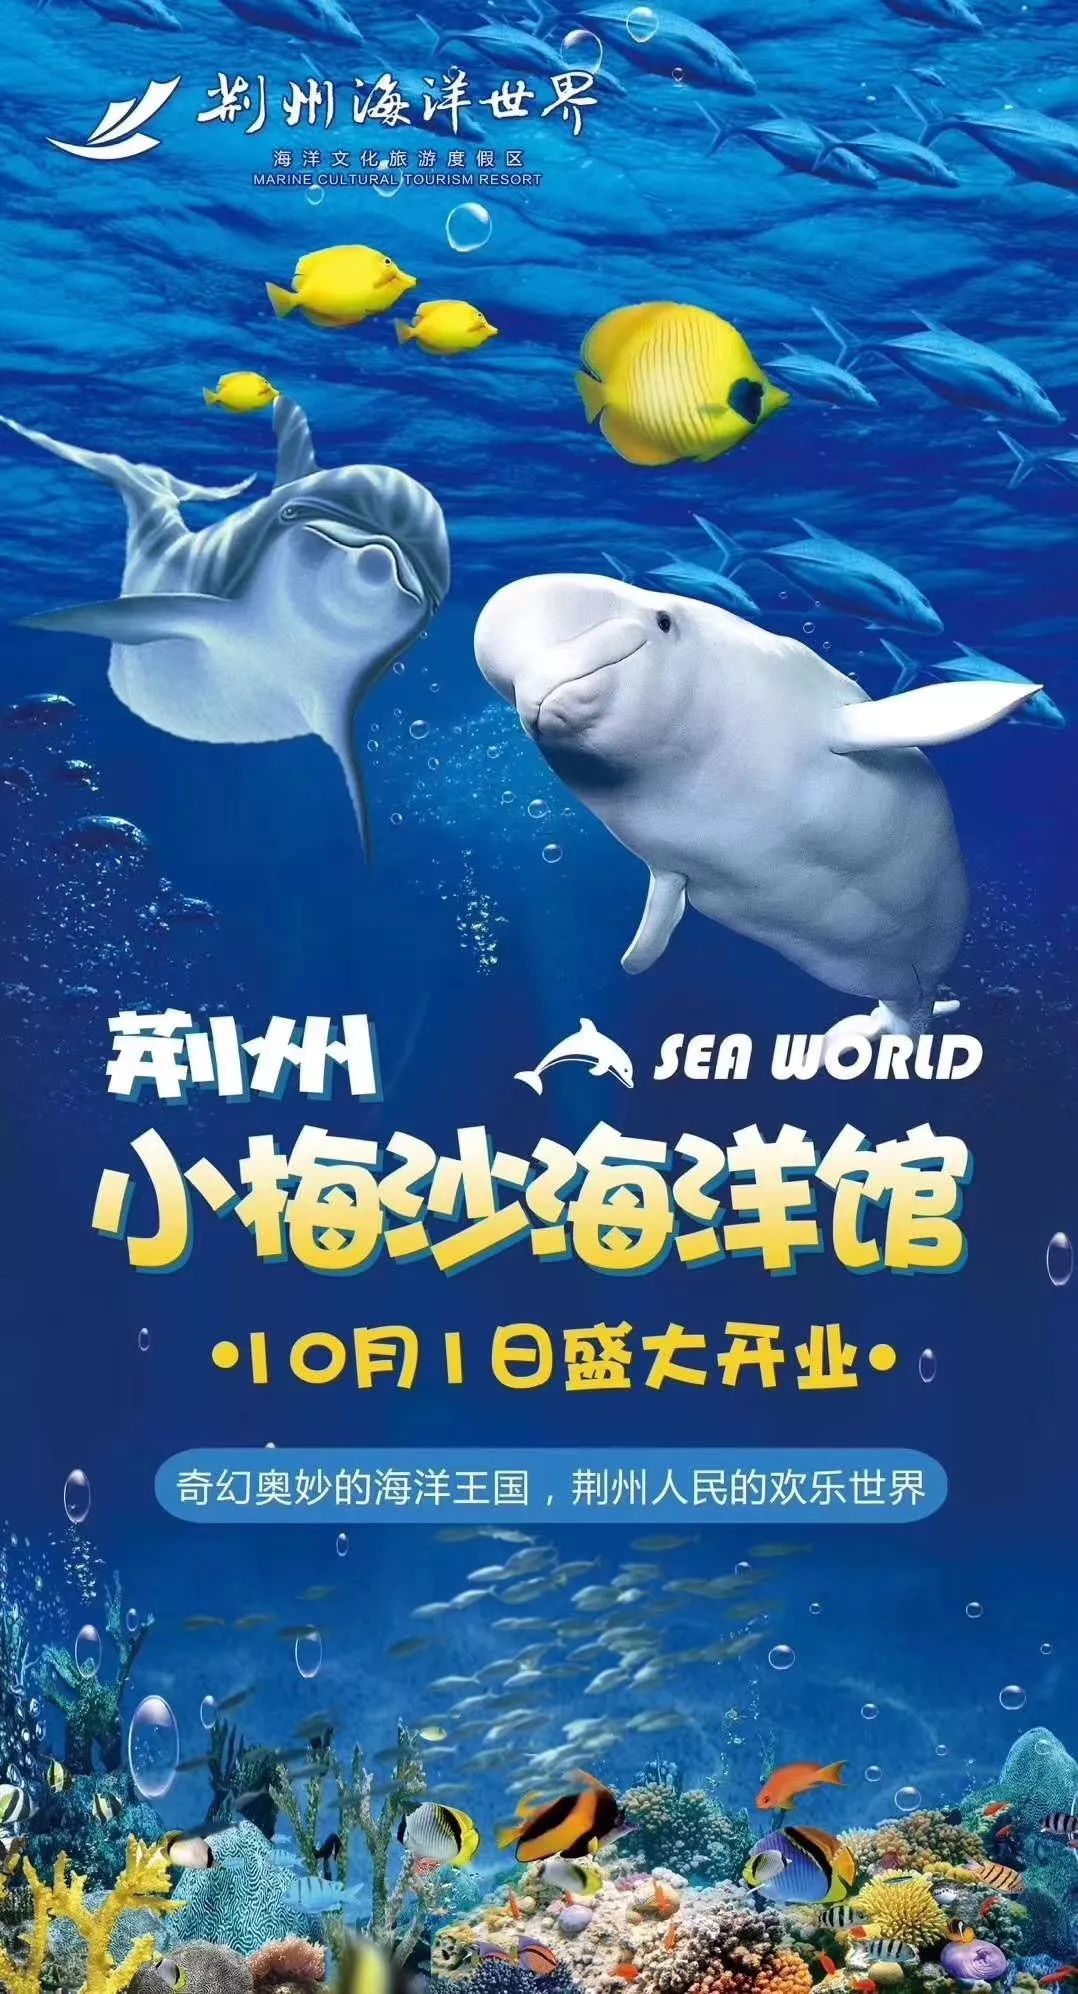 荆州小梅沙海洋馆9月28日揭幕,免费门票大派送啦!